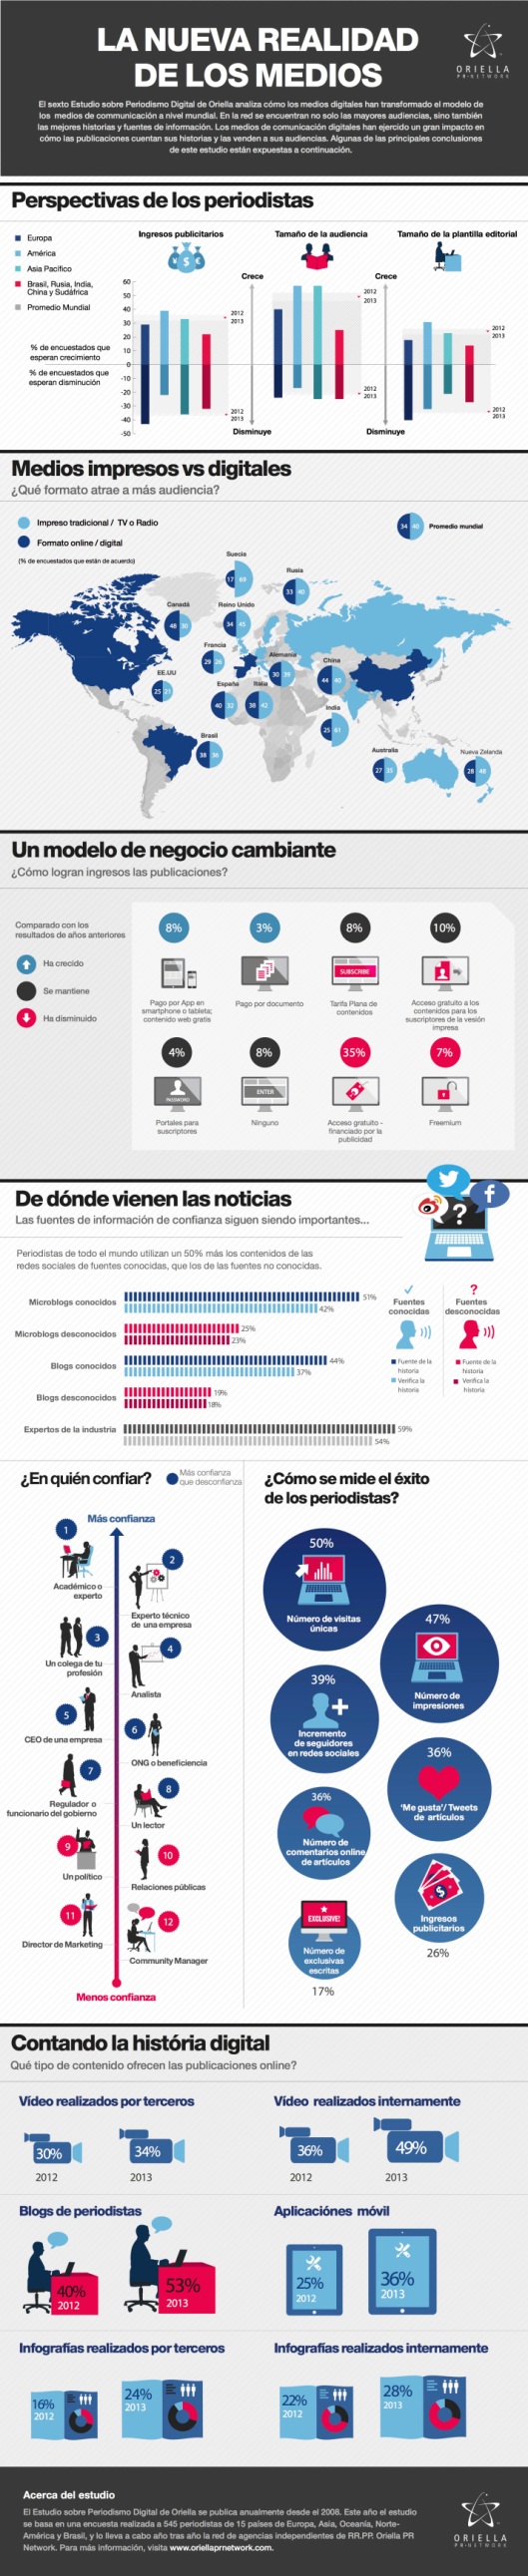 infografia_estudio_la_nueva_realidad_de_los_medios